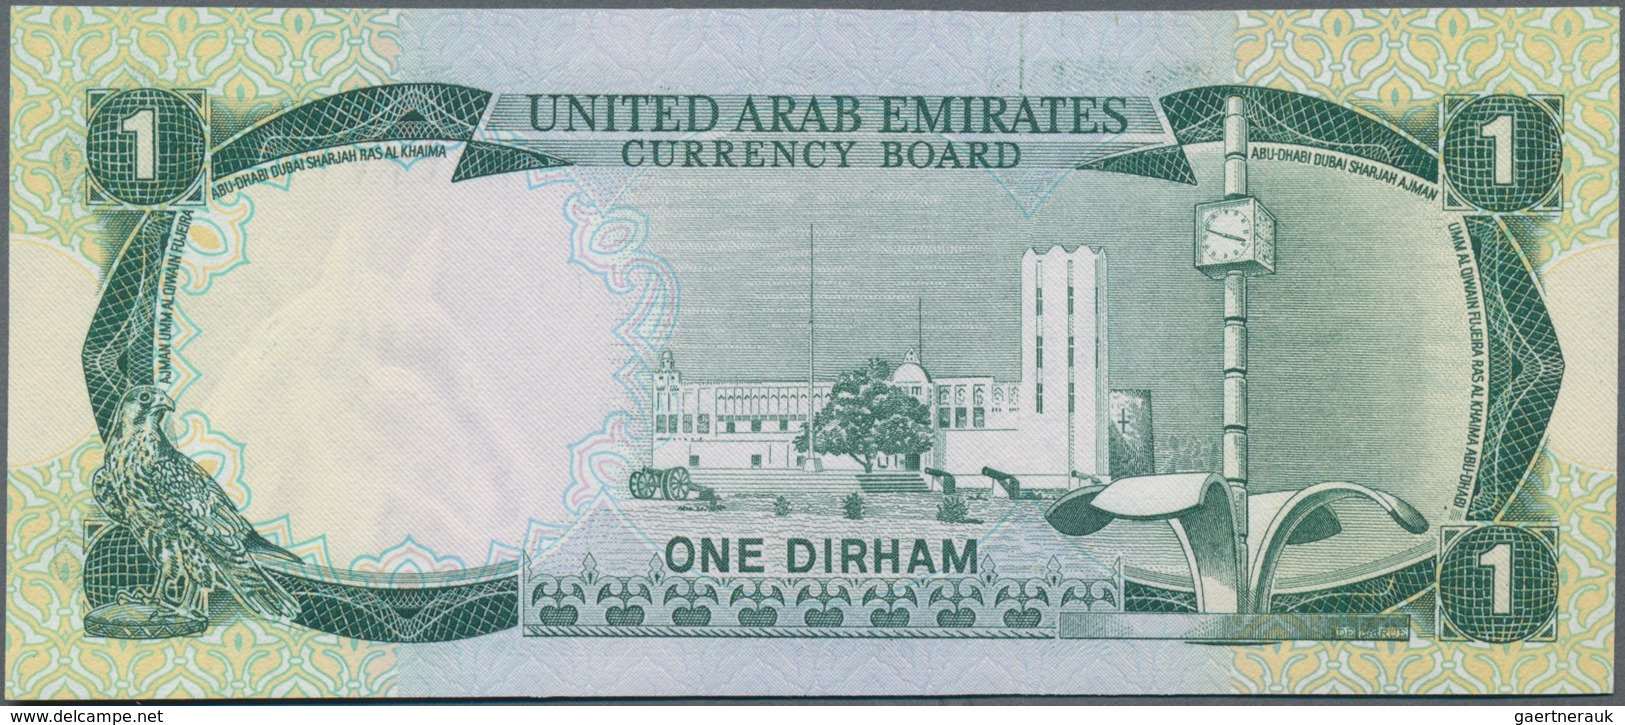 United Arab Emirates / Vereinigte Arabische Emirate: United Arab Emirates Currency Board 1 Dirham ND - Ver. Arab. Emirate